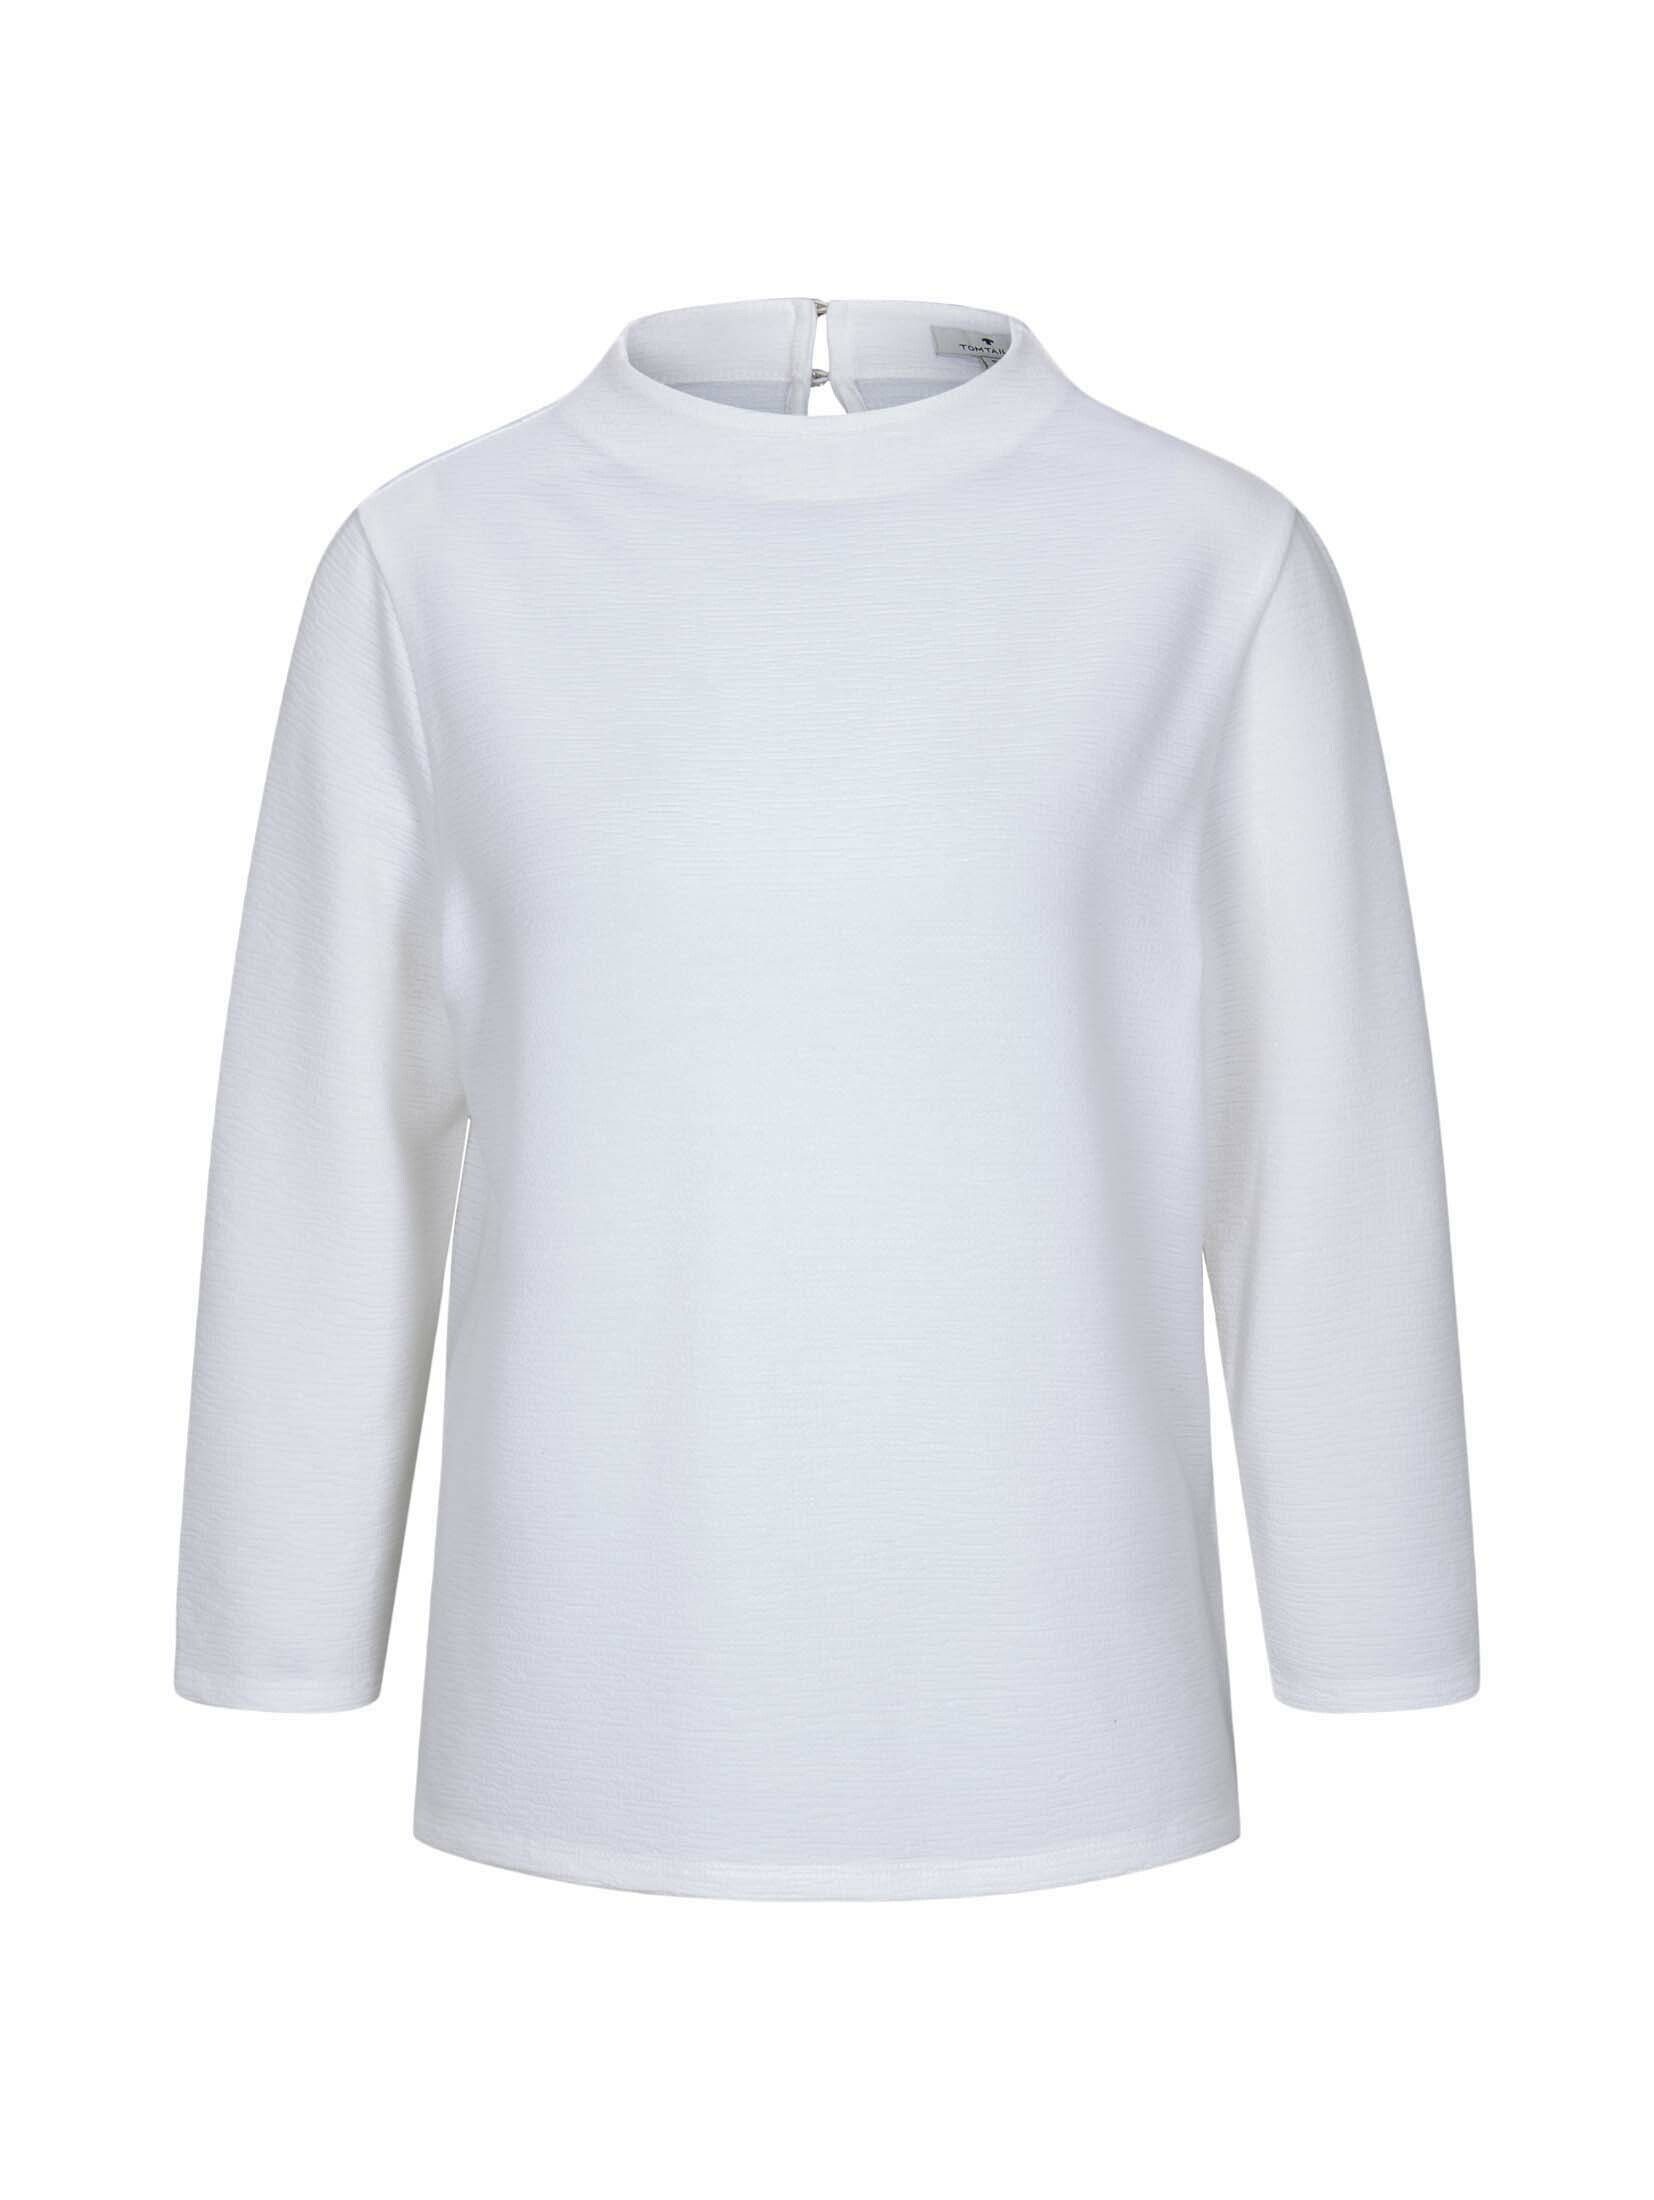 TAILOR Strukturiertes Whisper TOM T-Shirt White Shirt Stehkragen